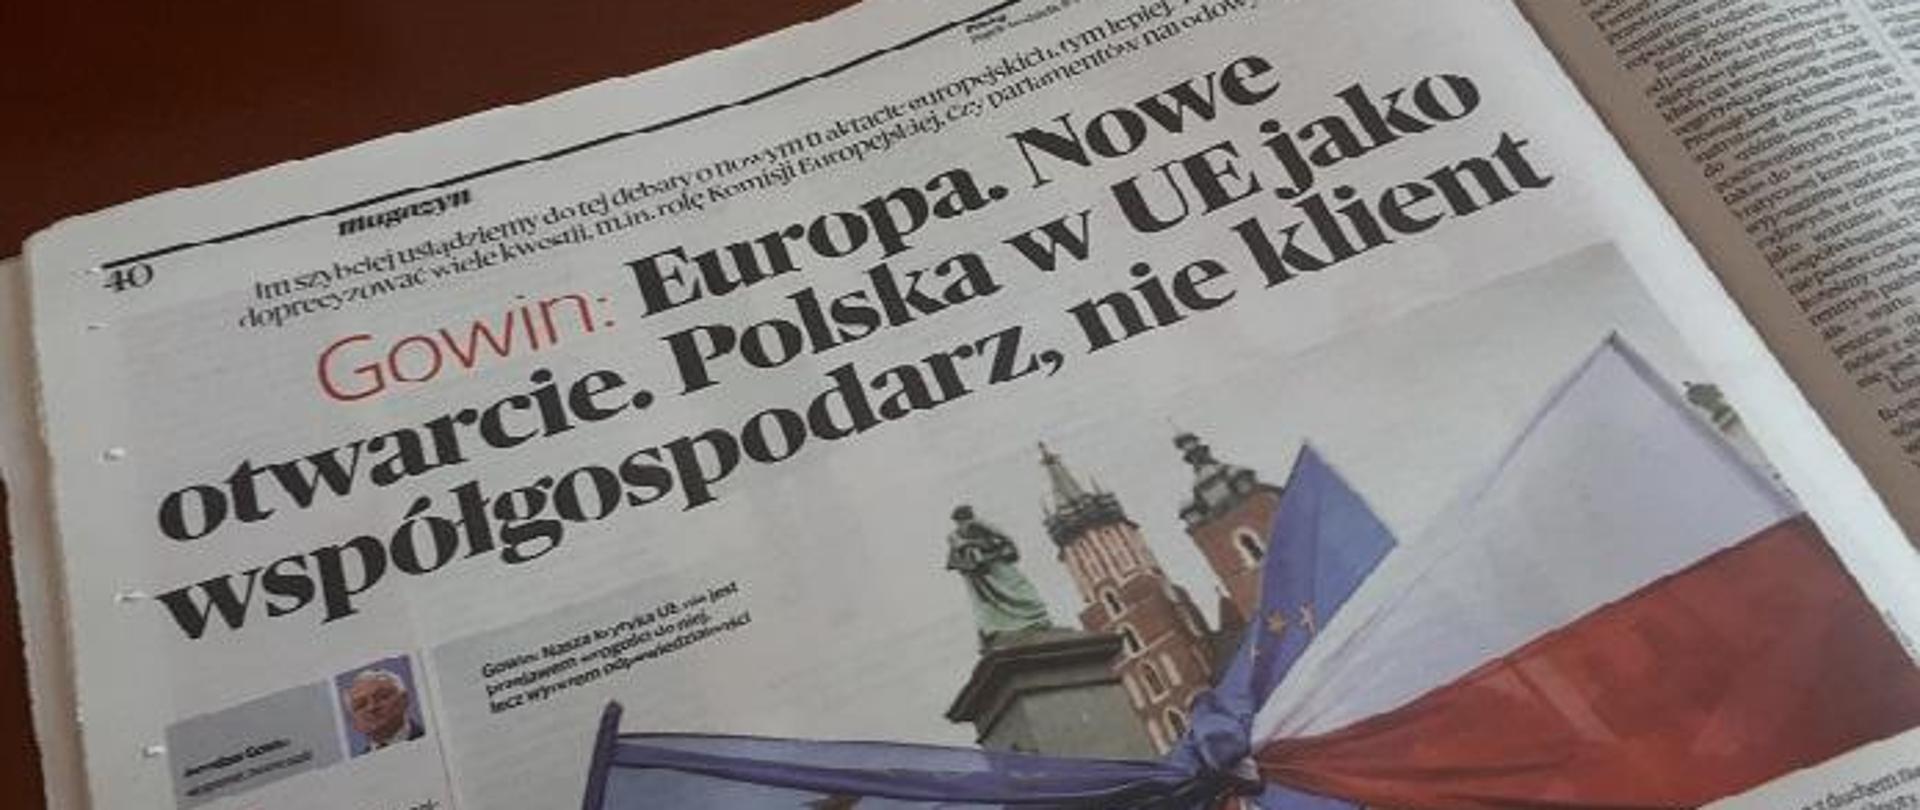 Zdjęcie strony gazety z artykułem "Gowin: Europa. Nowe otwarcie. Polska w UE jako współgospodarz, nie klient"